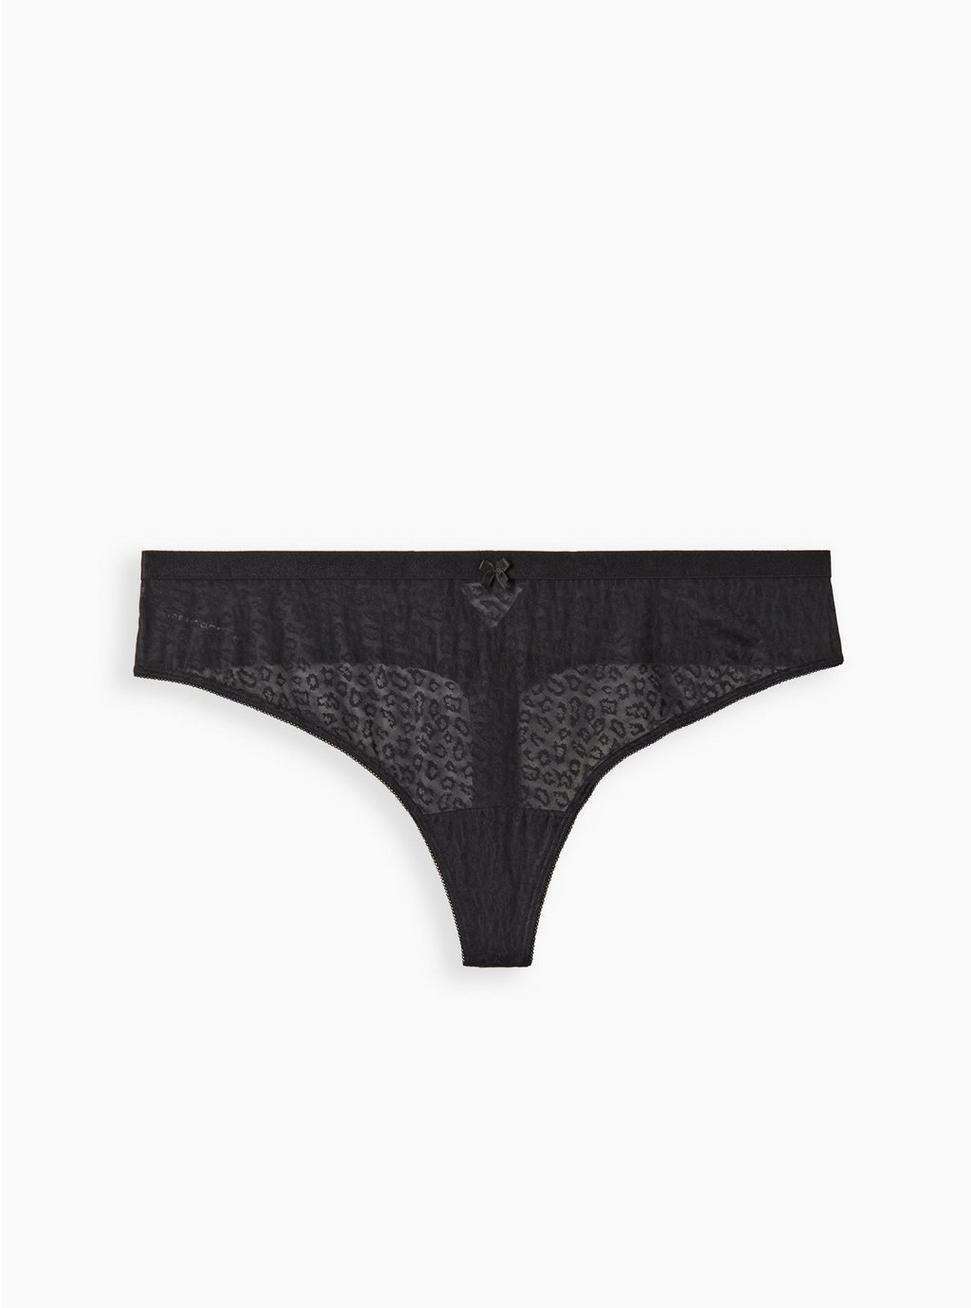 Keyhole Thong Panty - Cotton Leopard Black, RICH BLACK, hi-res